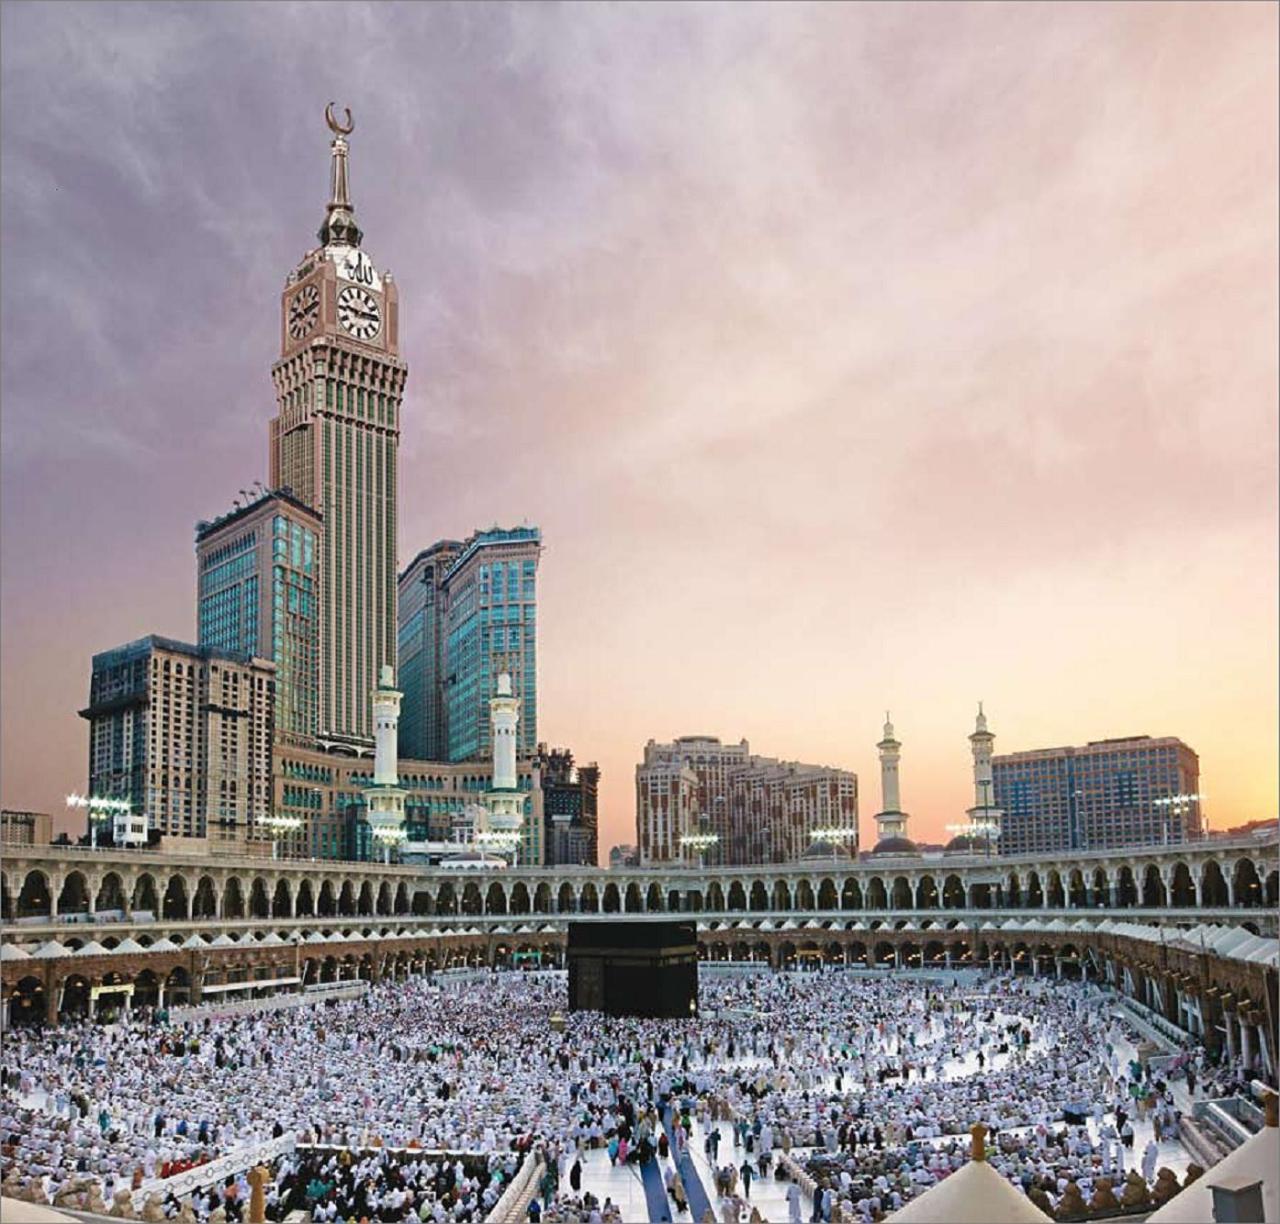 Fairmont makkah clock royal tower mecca arab saudi